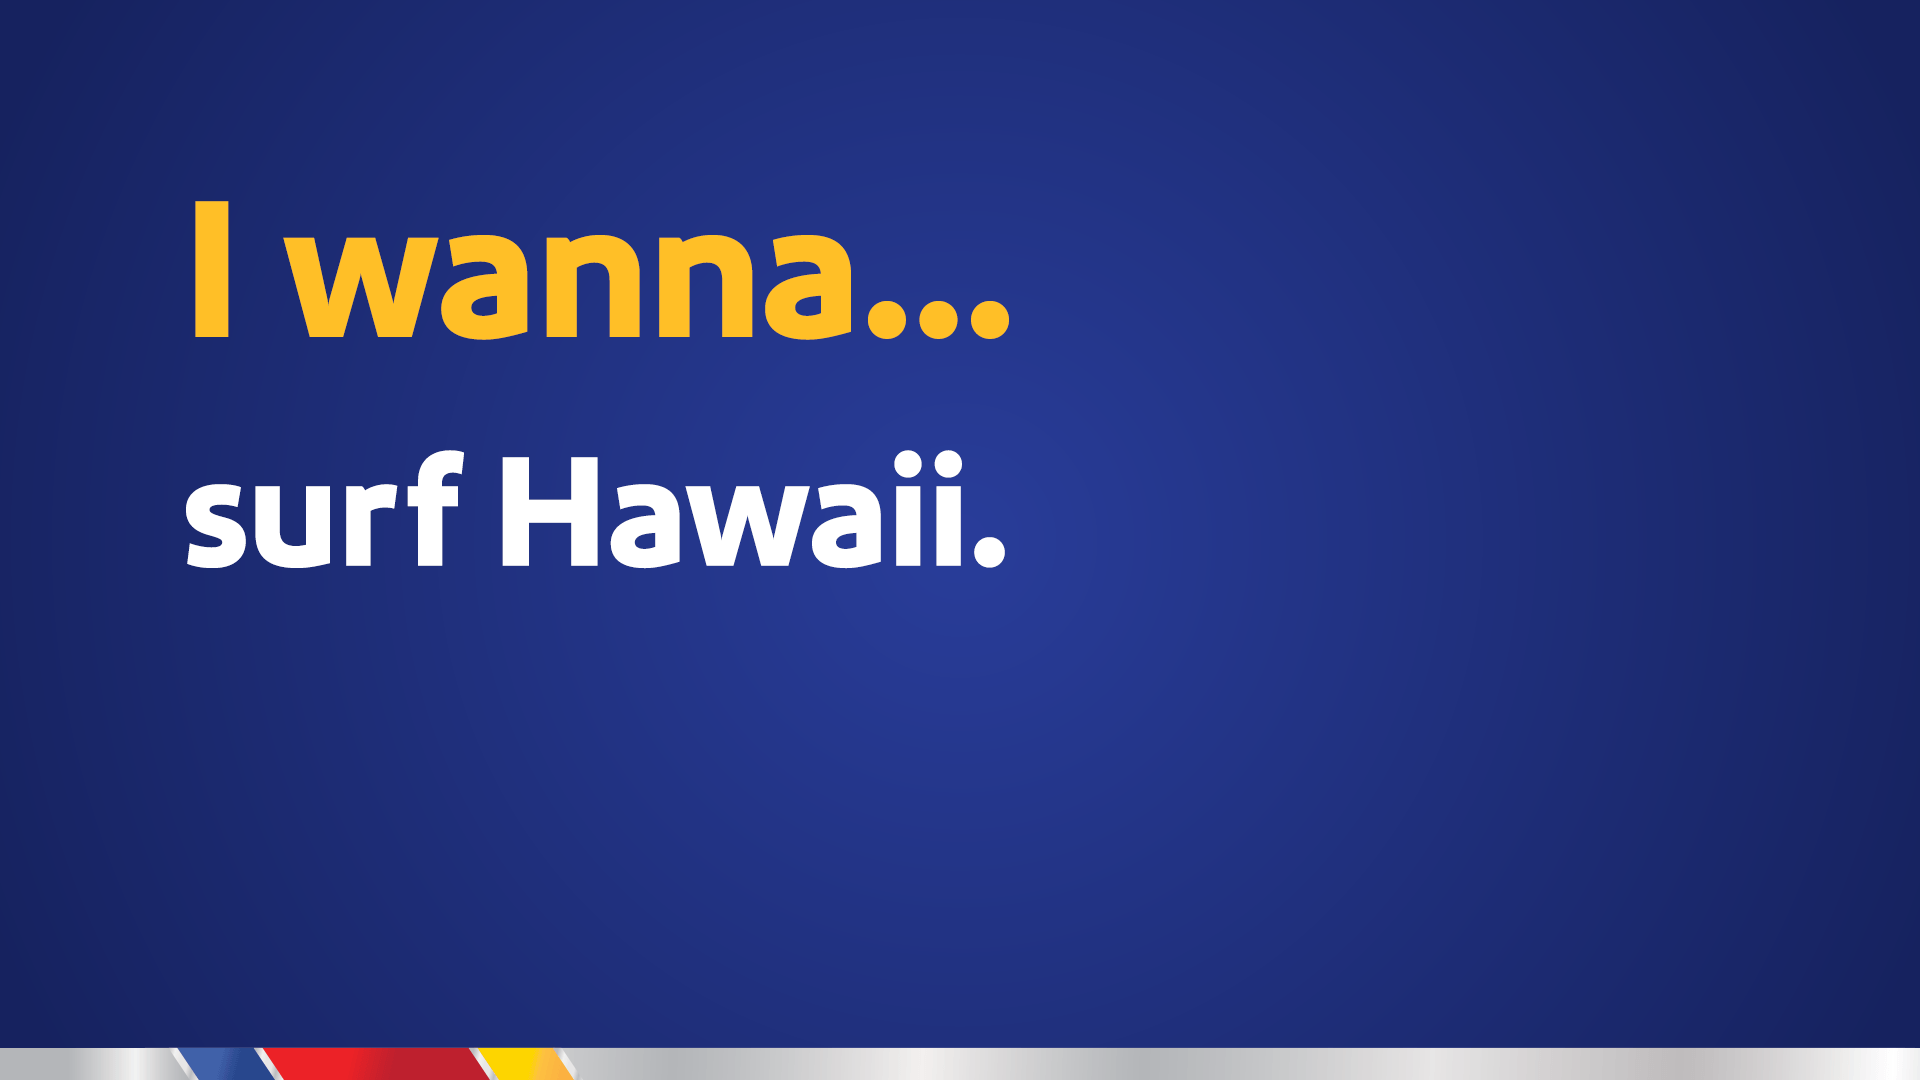 I wanna… surf Hawaii.